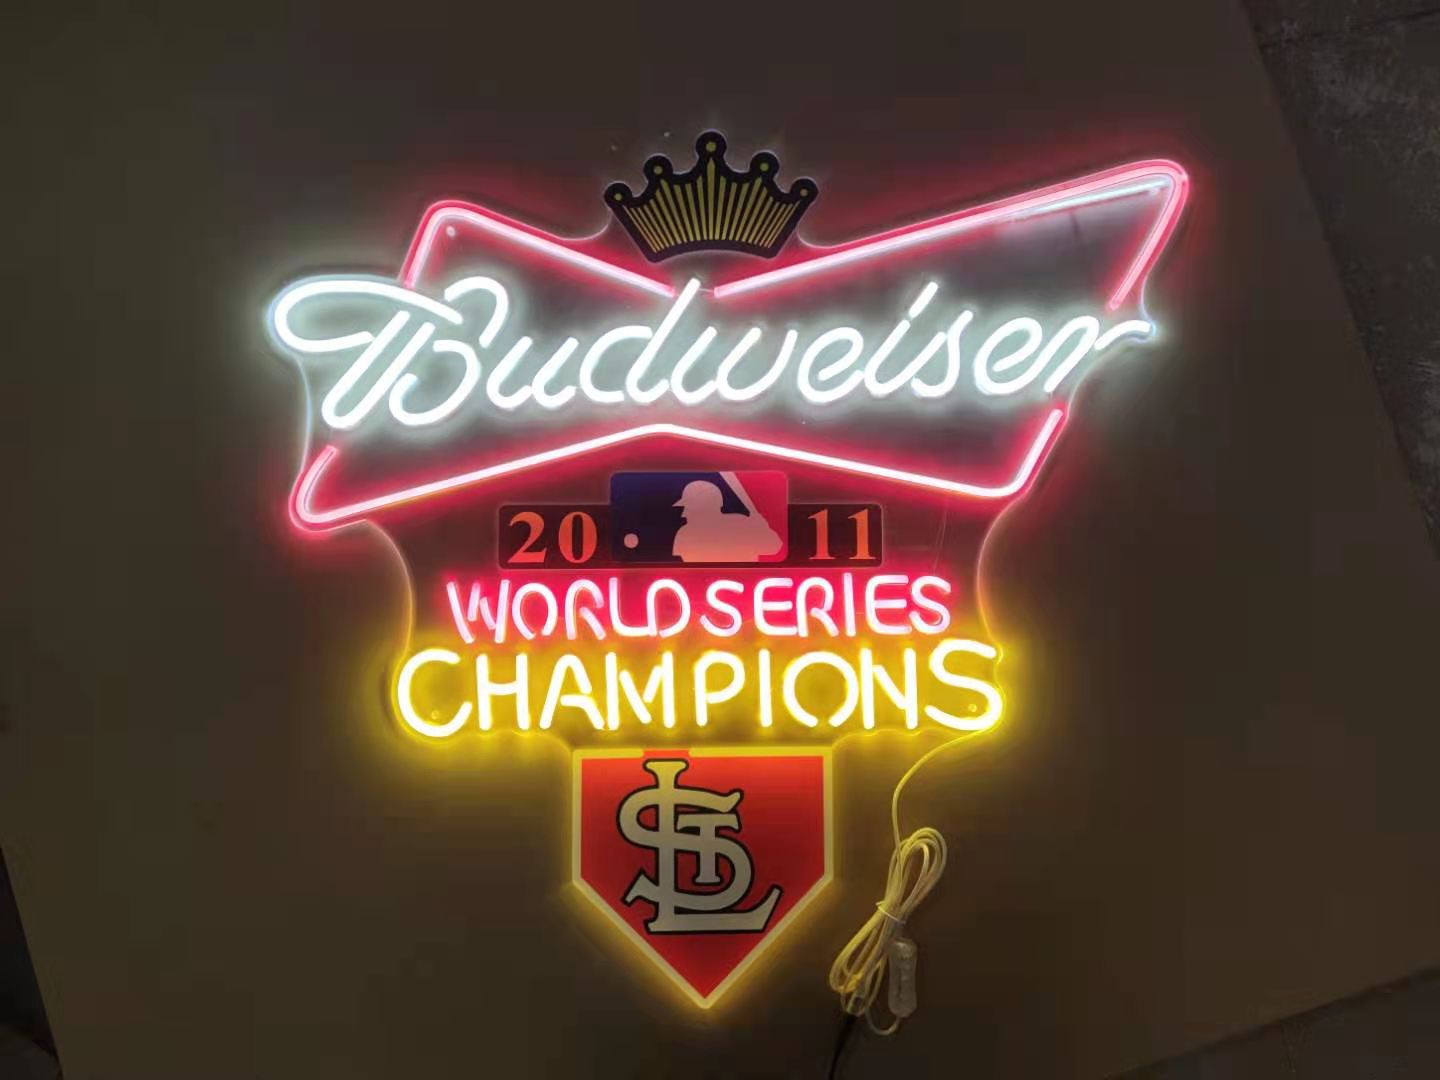 Custom St louis cardinals Budweiser Glass Neon Light Sign - AliExpress